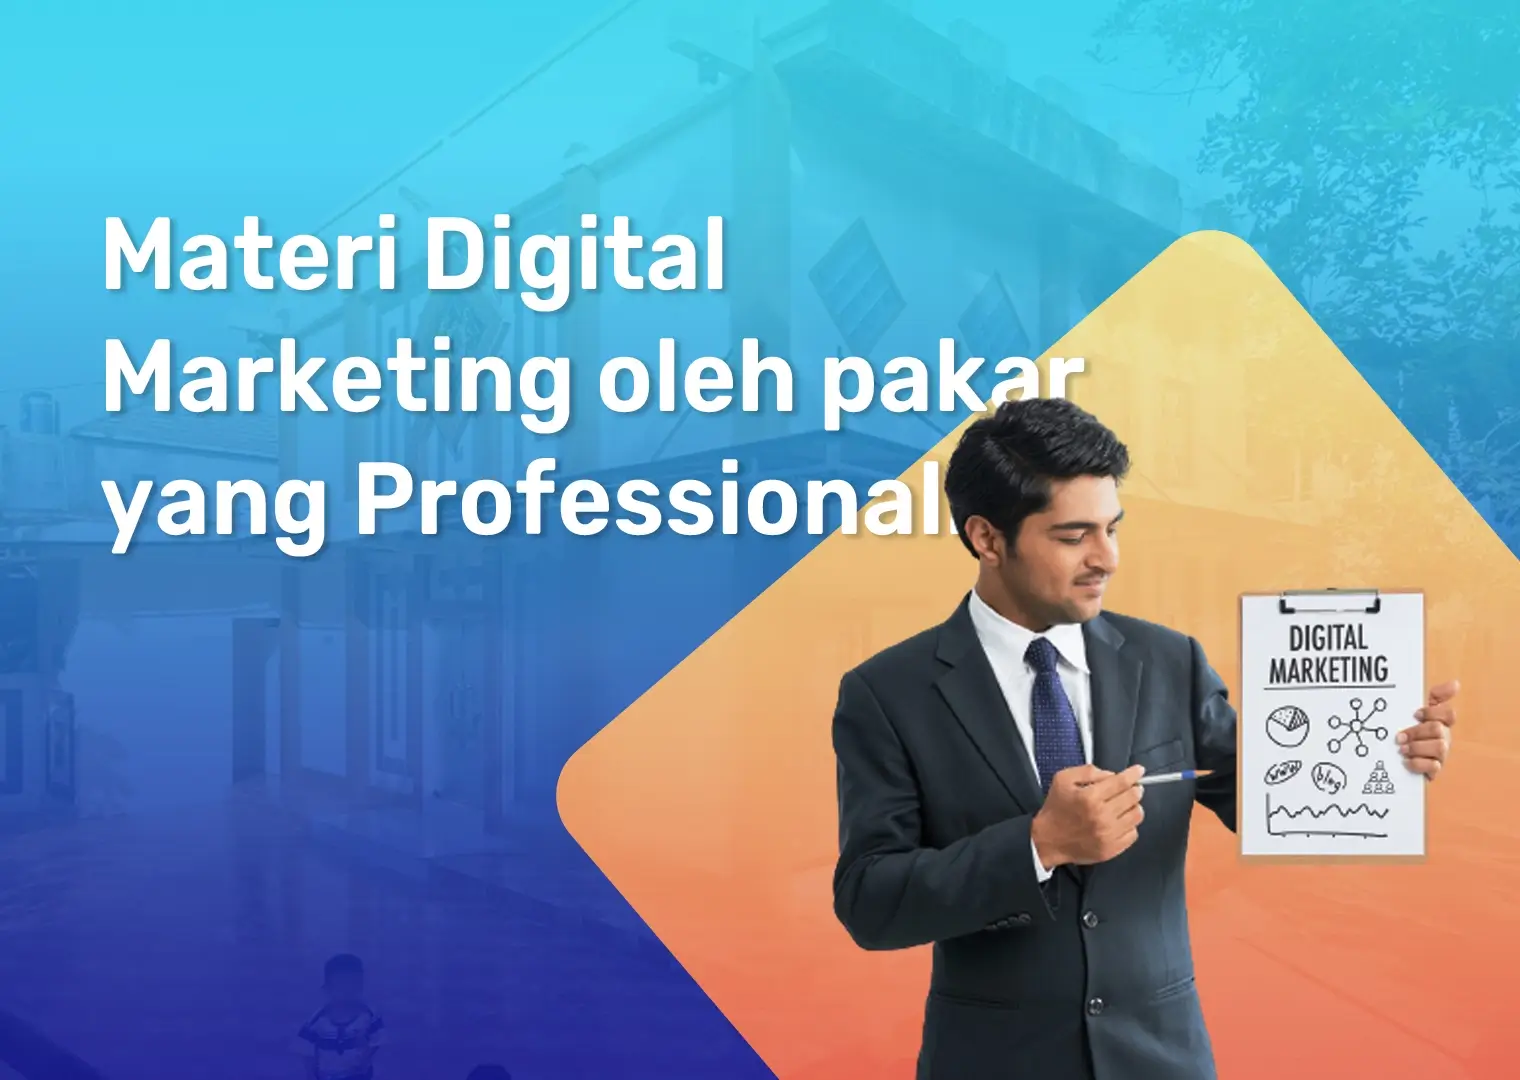 Materi-Digital-Marketing-oleh-pakar-yang-Professional.webp